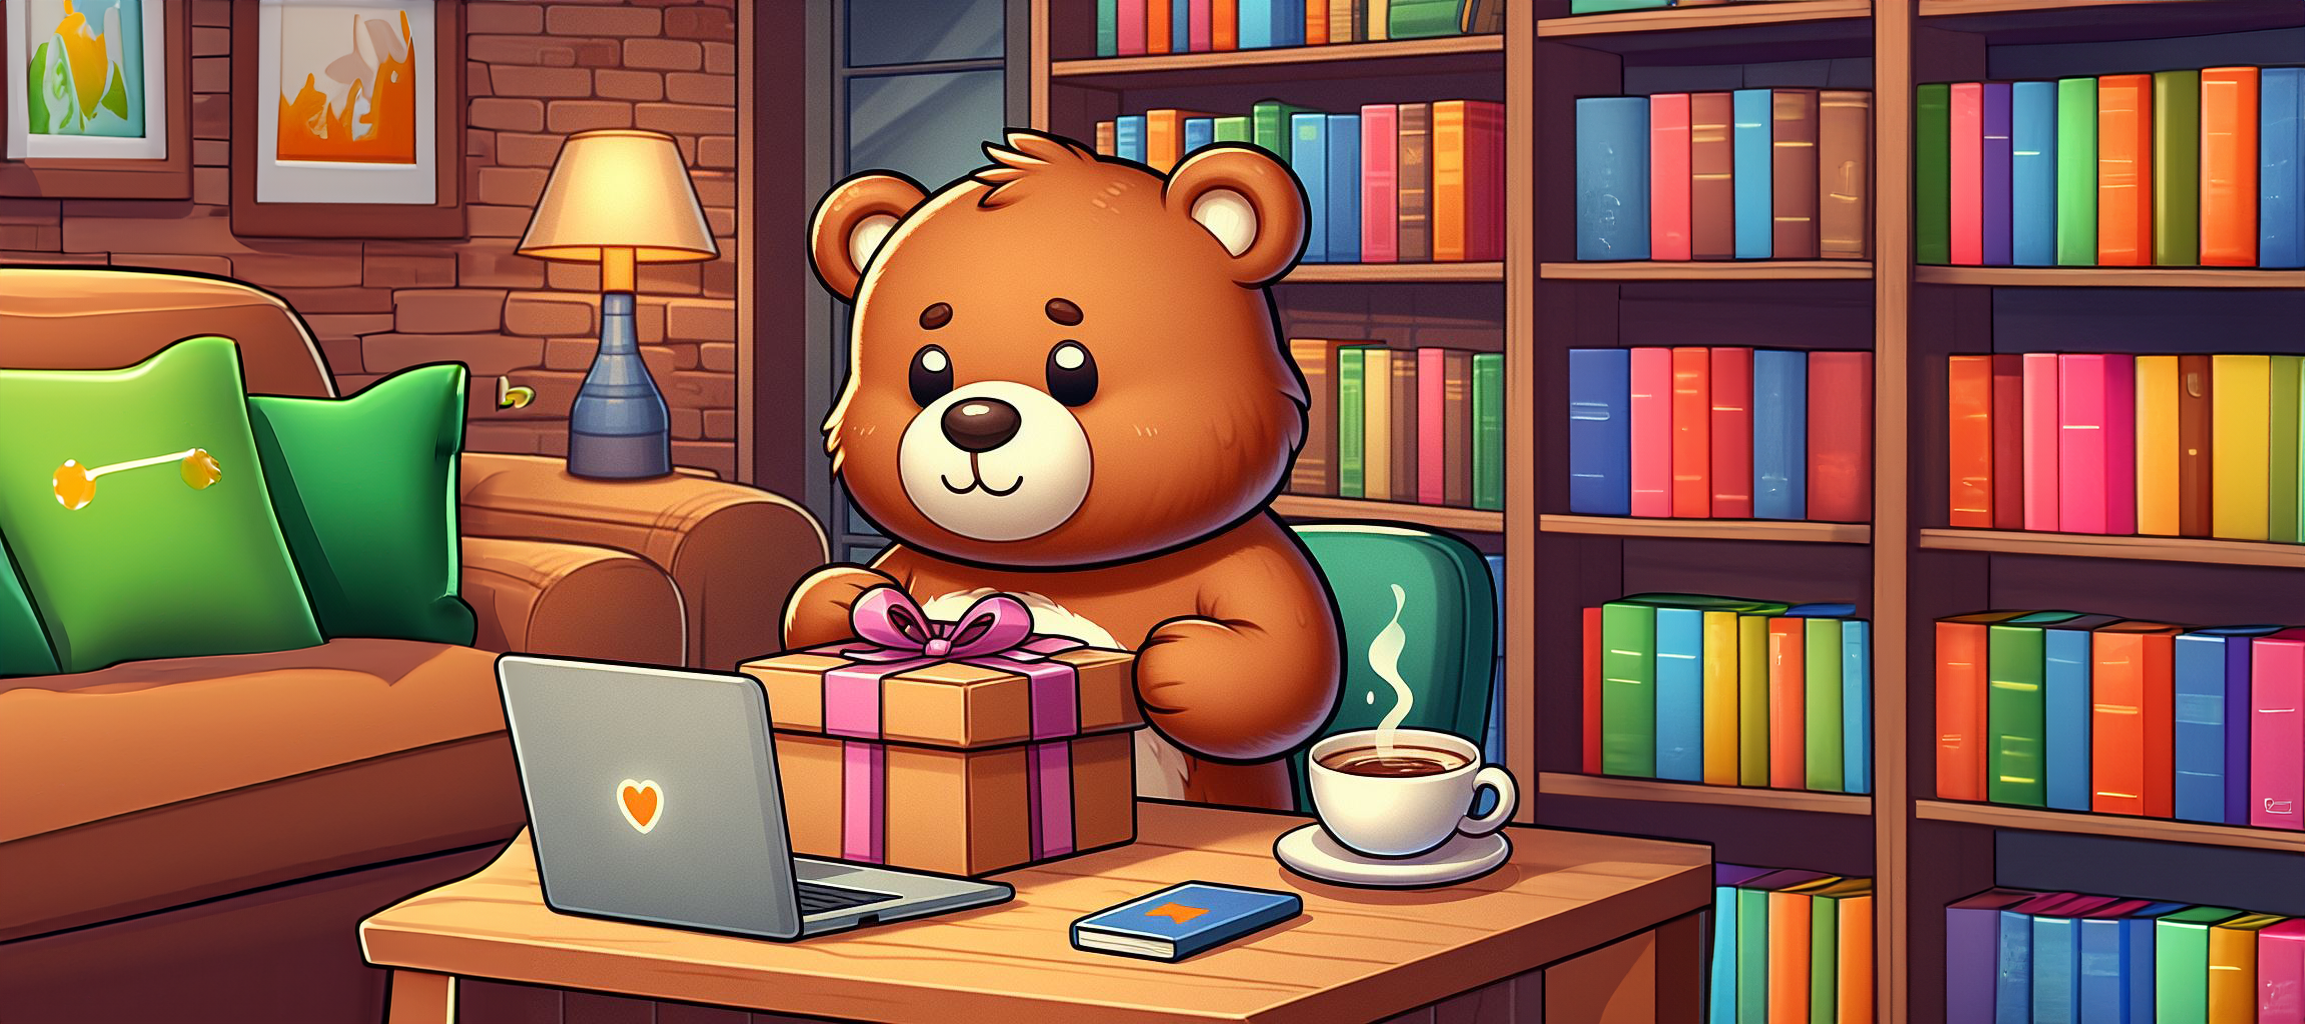 Cartoon Bear with a gift